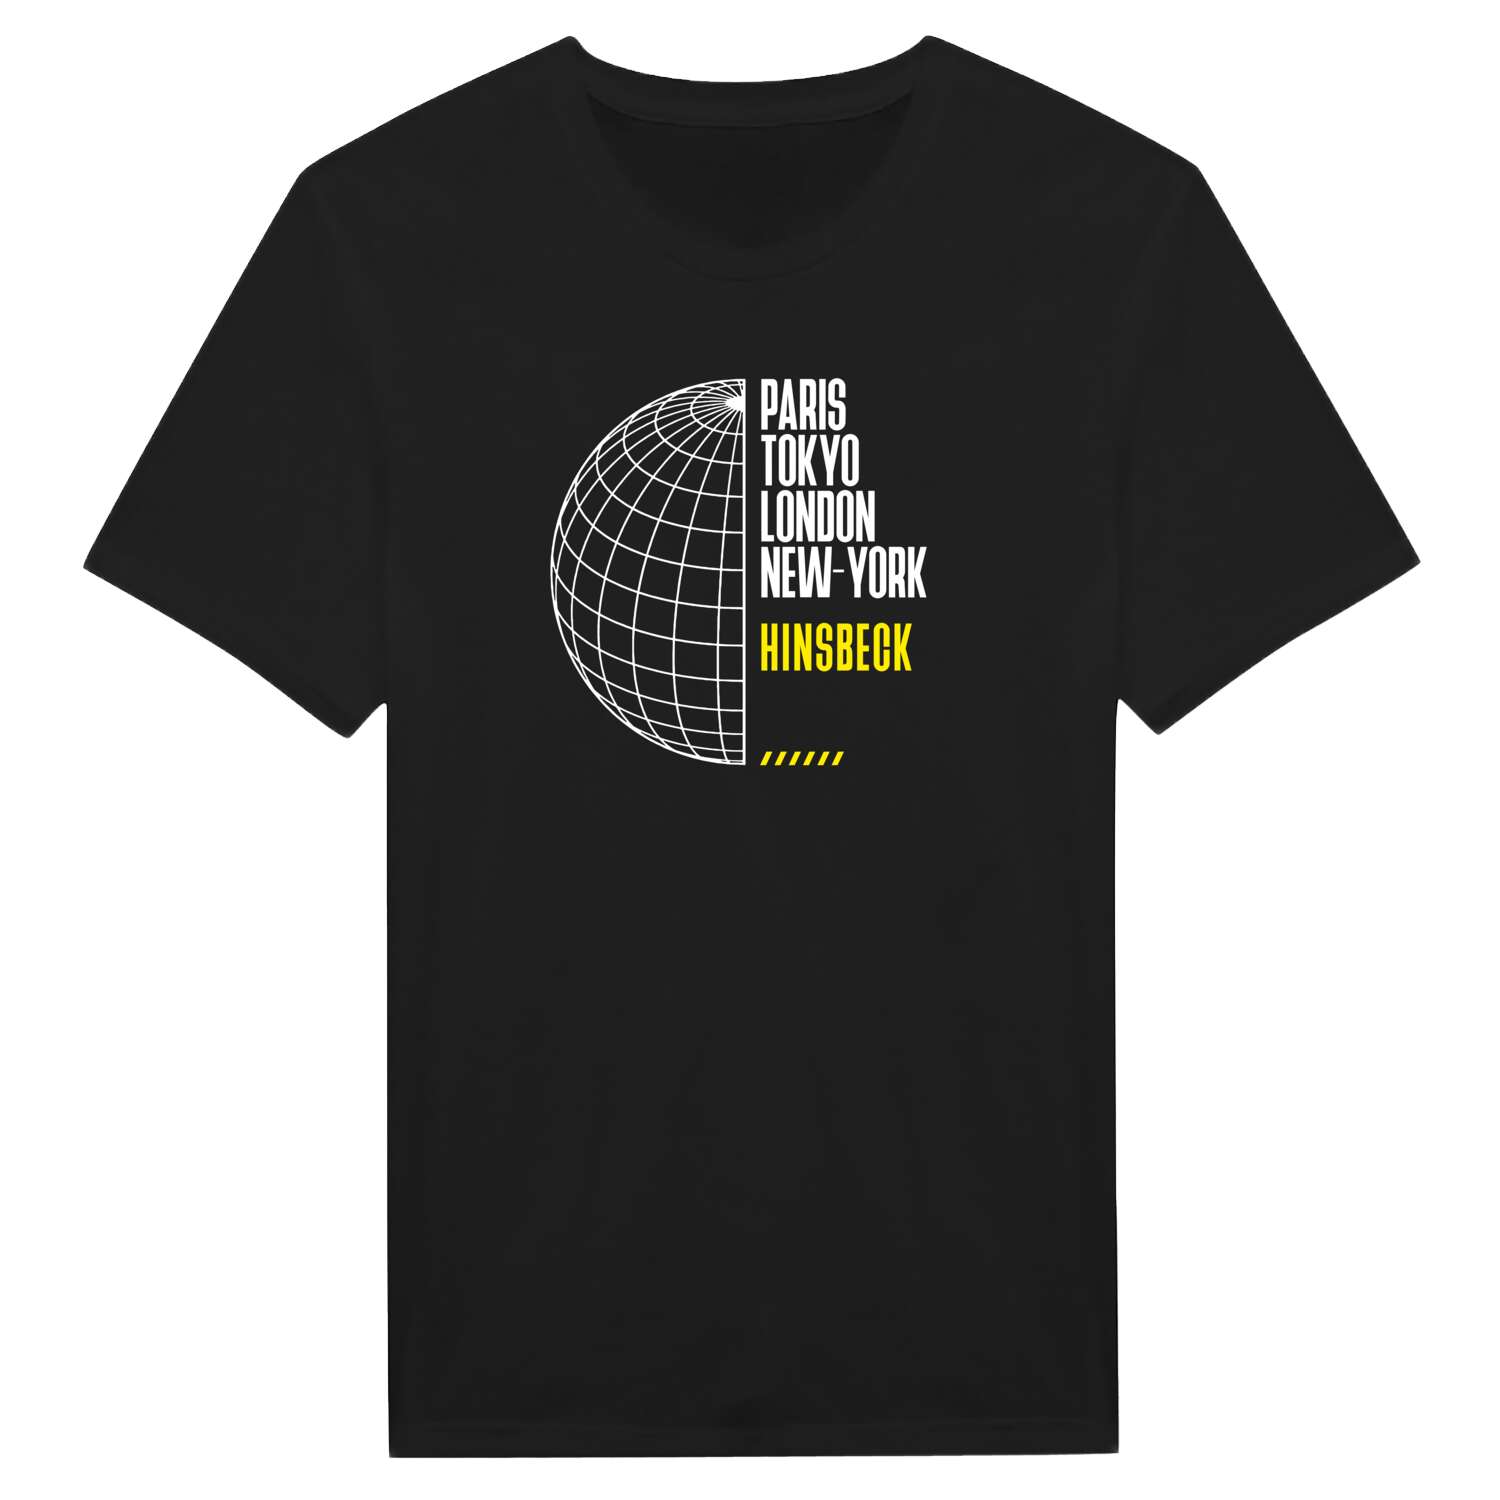 Hinsbeck T-Shirt »Paris Tokyo London«